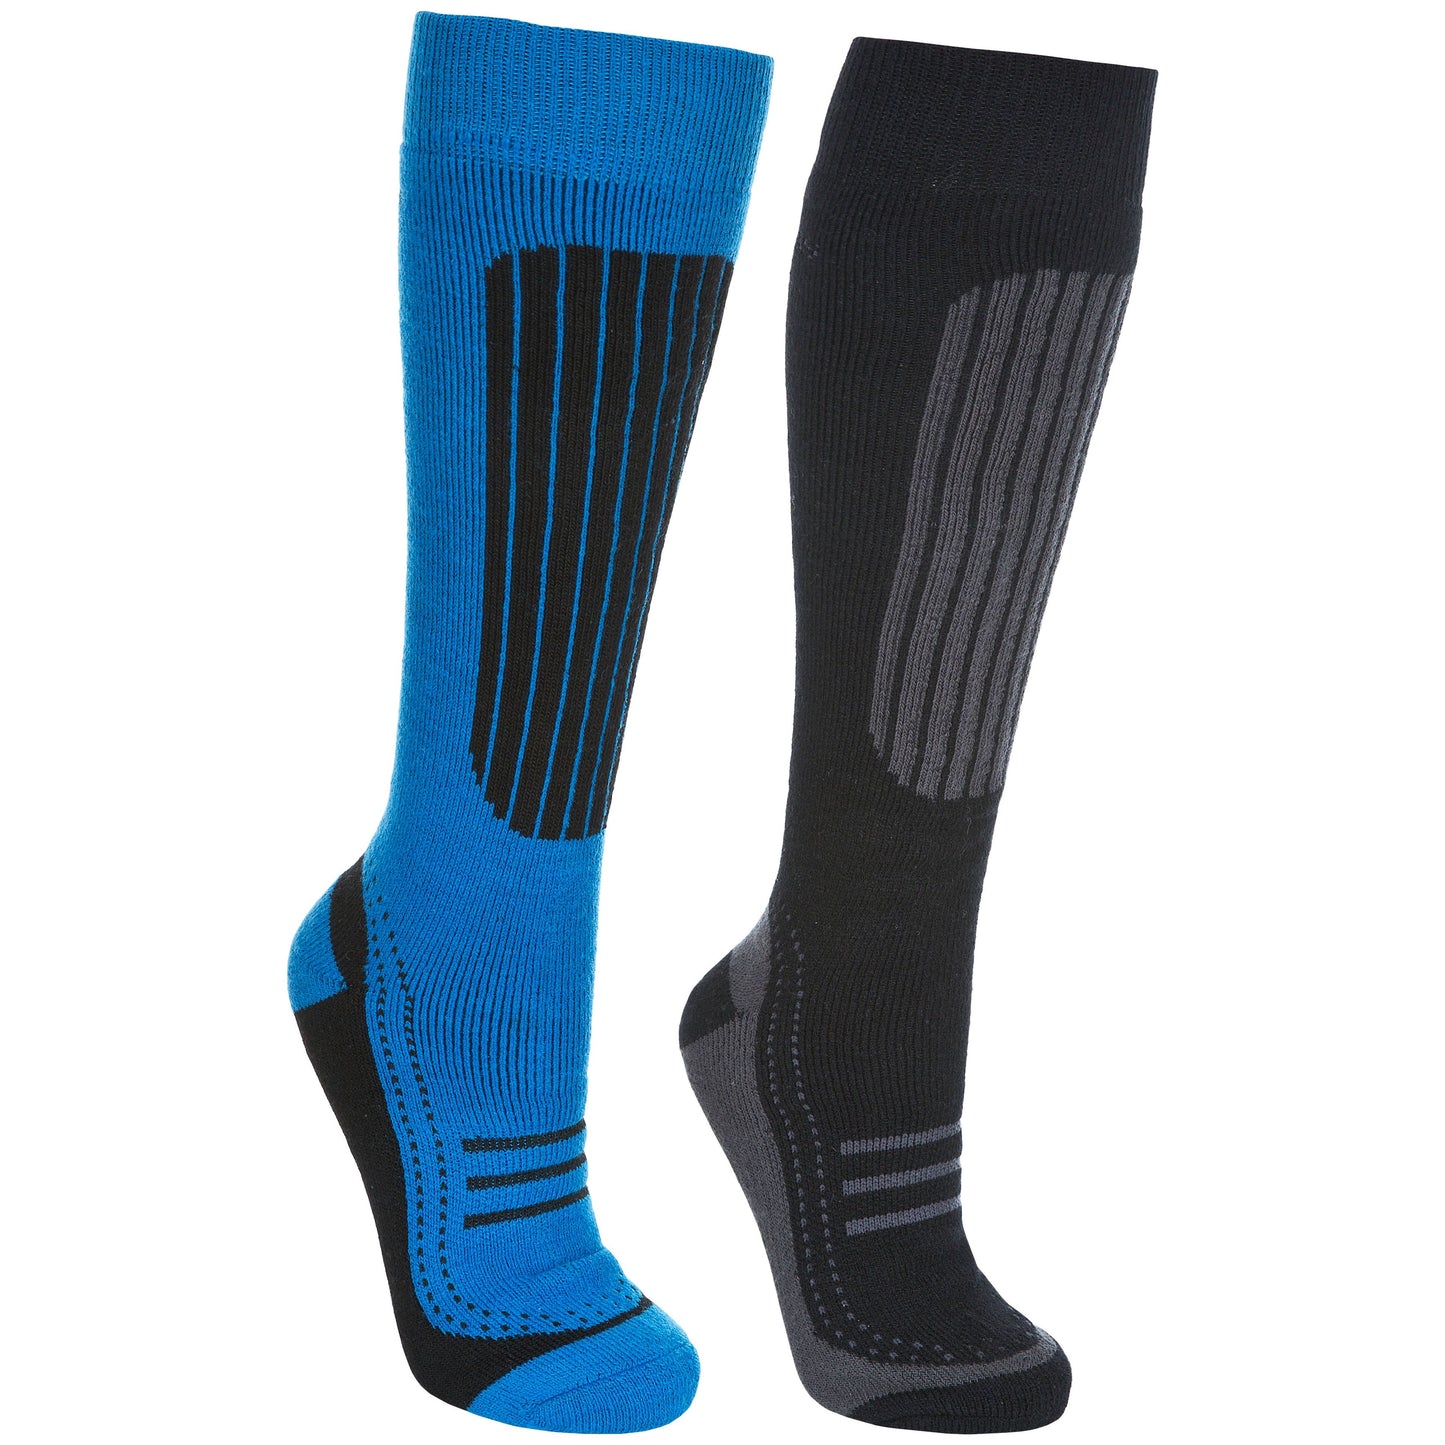 Langdon 2 Men's Ski Socks - 2 Pack - Blue / Black | Trespass Ireland